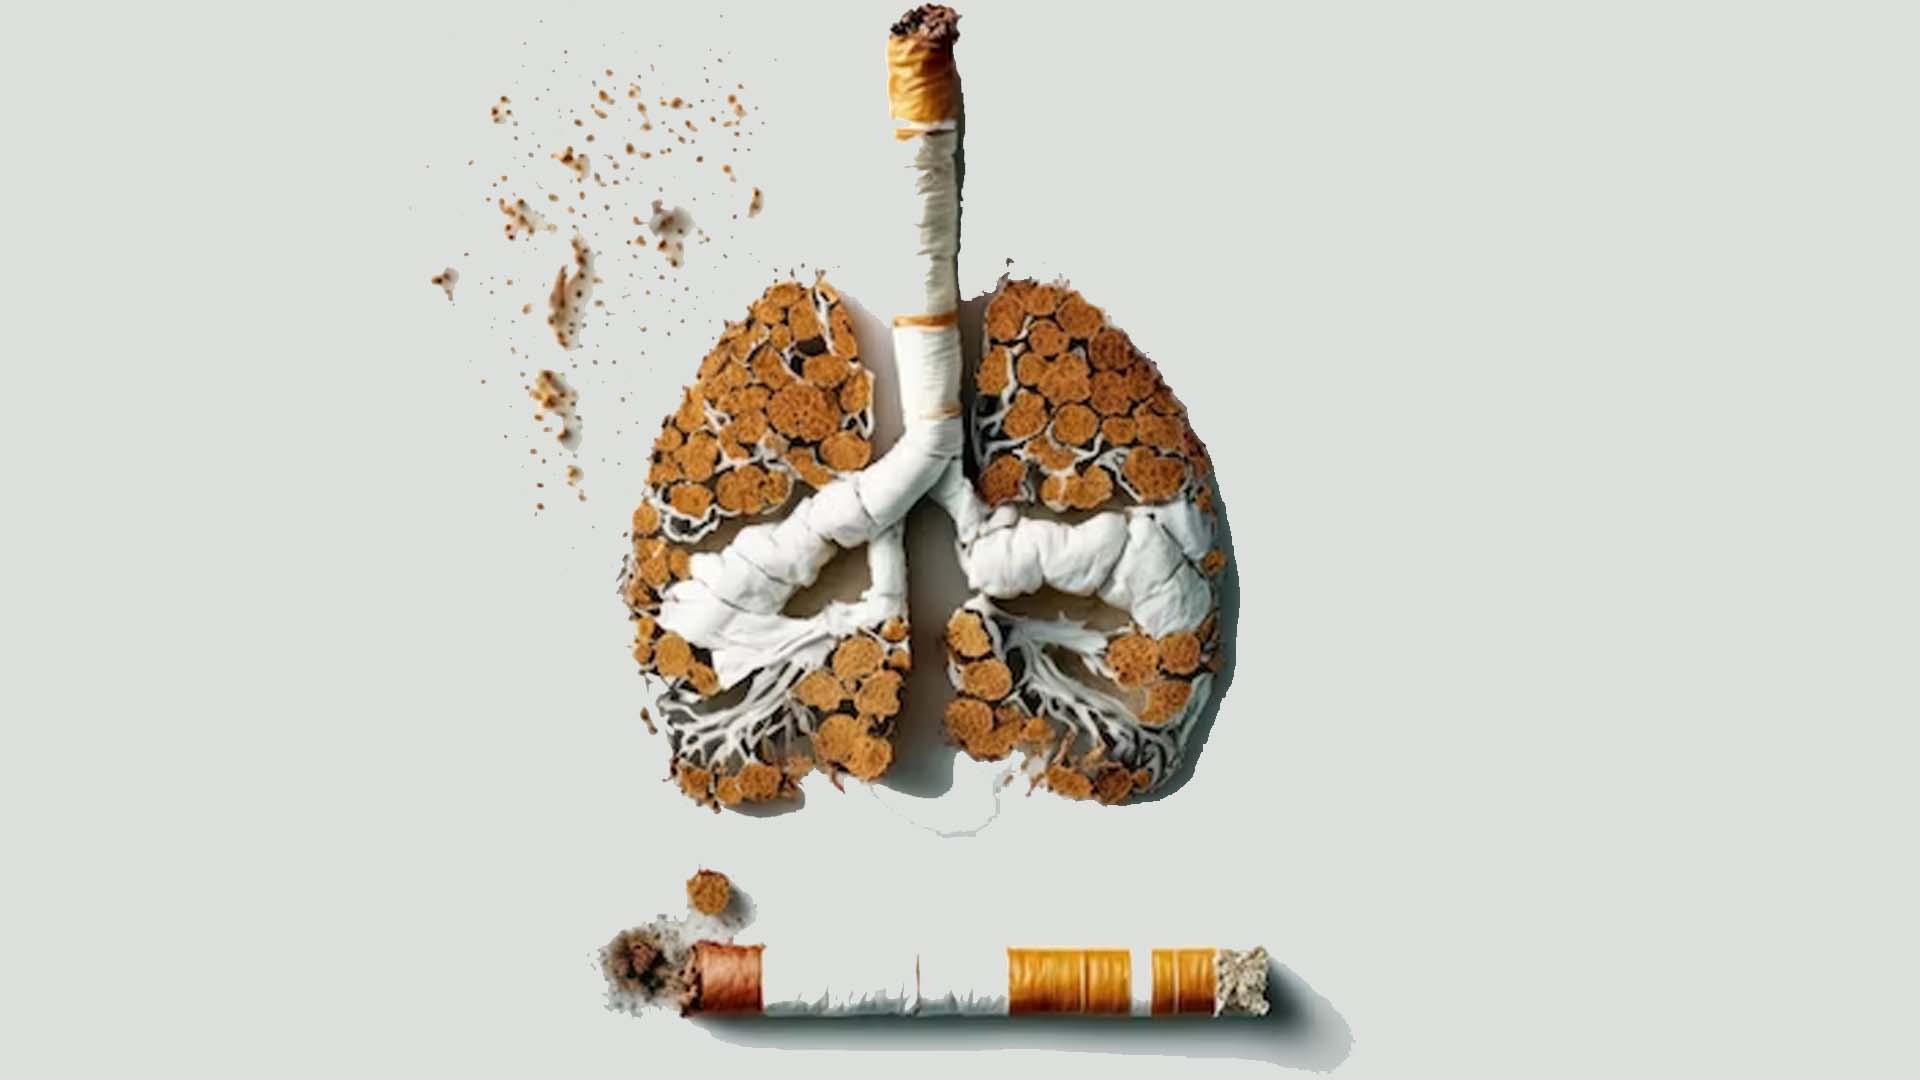 Smoking Causing Lung Cancer